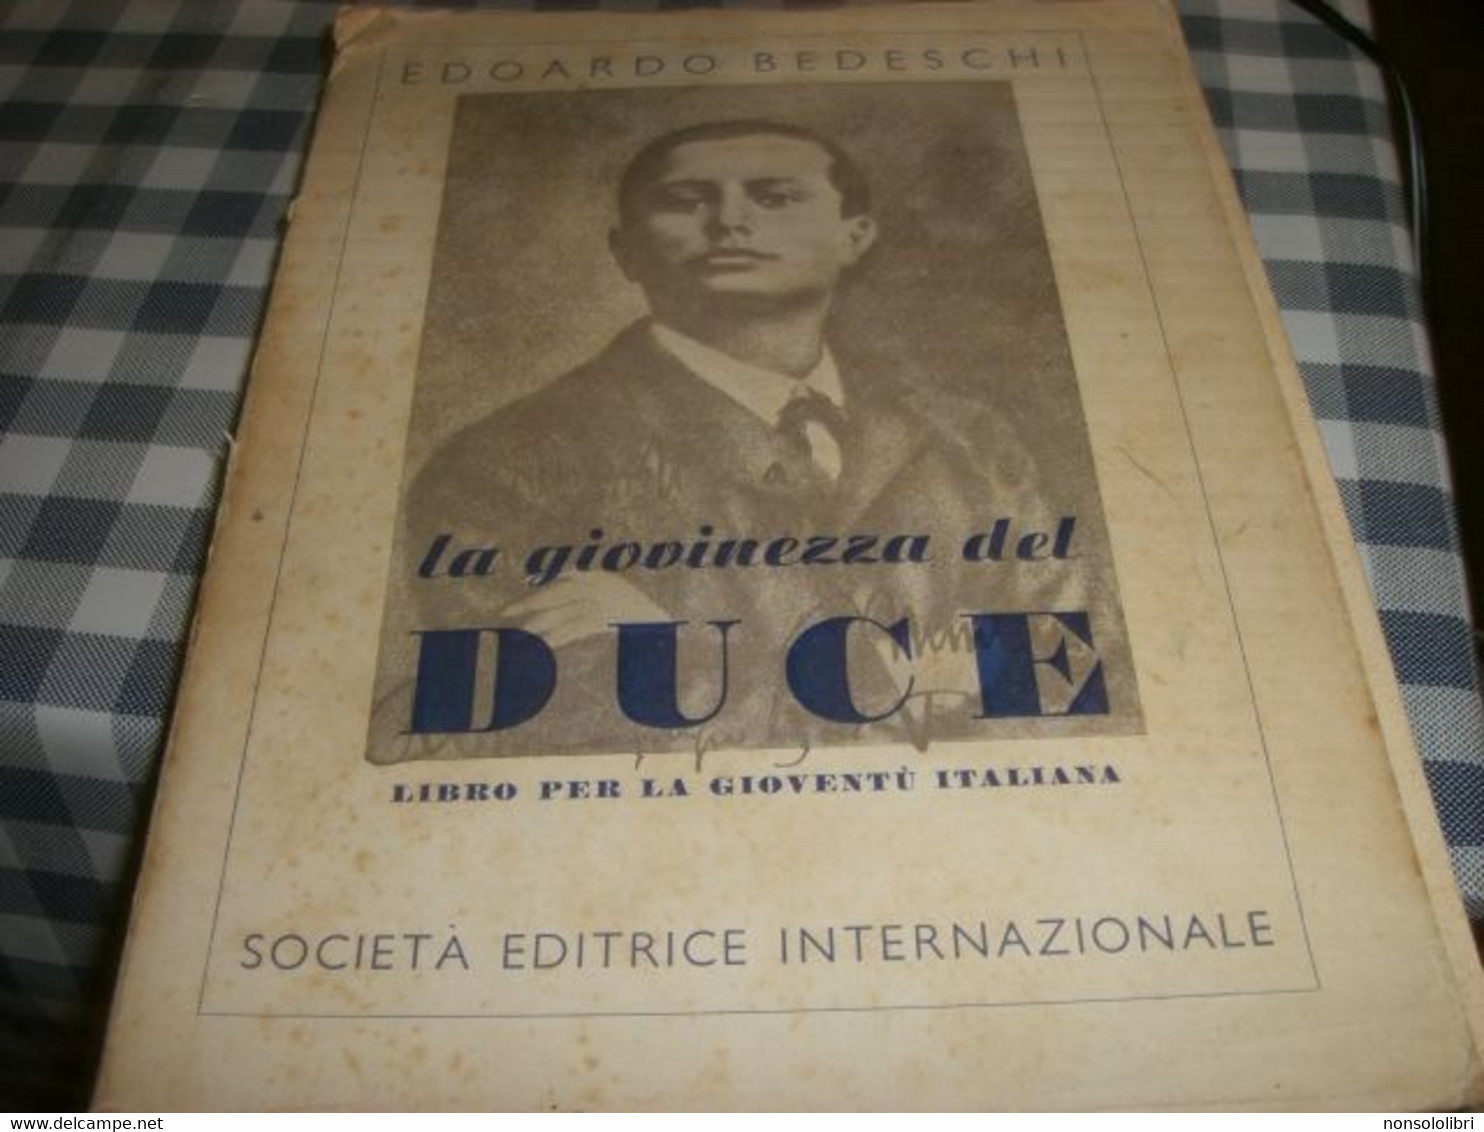 LIBRO LA GIOVINEZZA DEL DUCE -EDOARDO BEDESCHI -SEI EDIZIONI 1939 - Société, Politique, économie